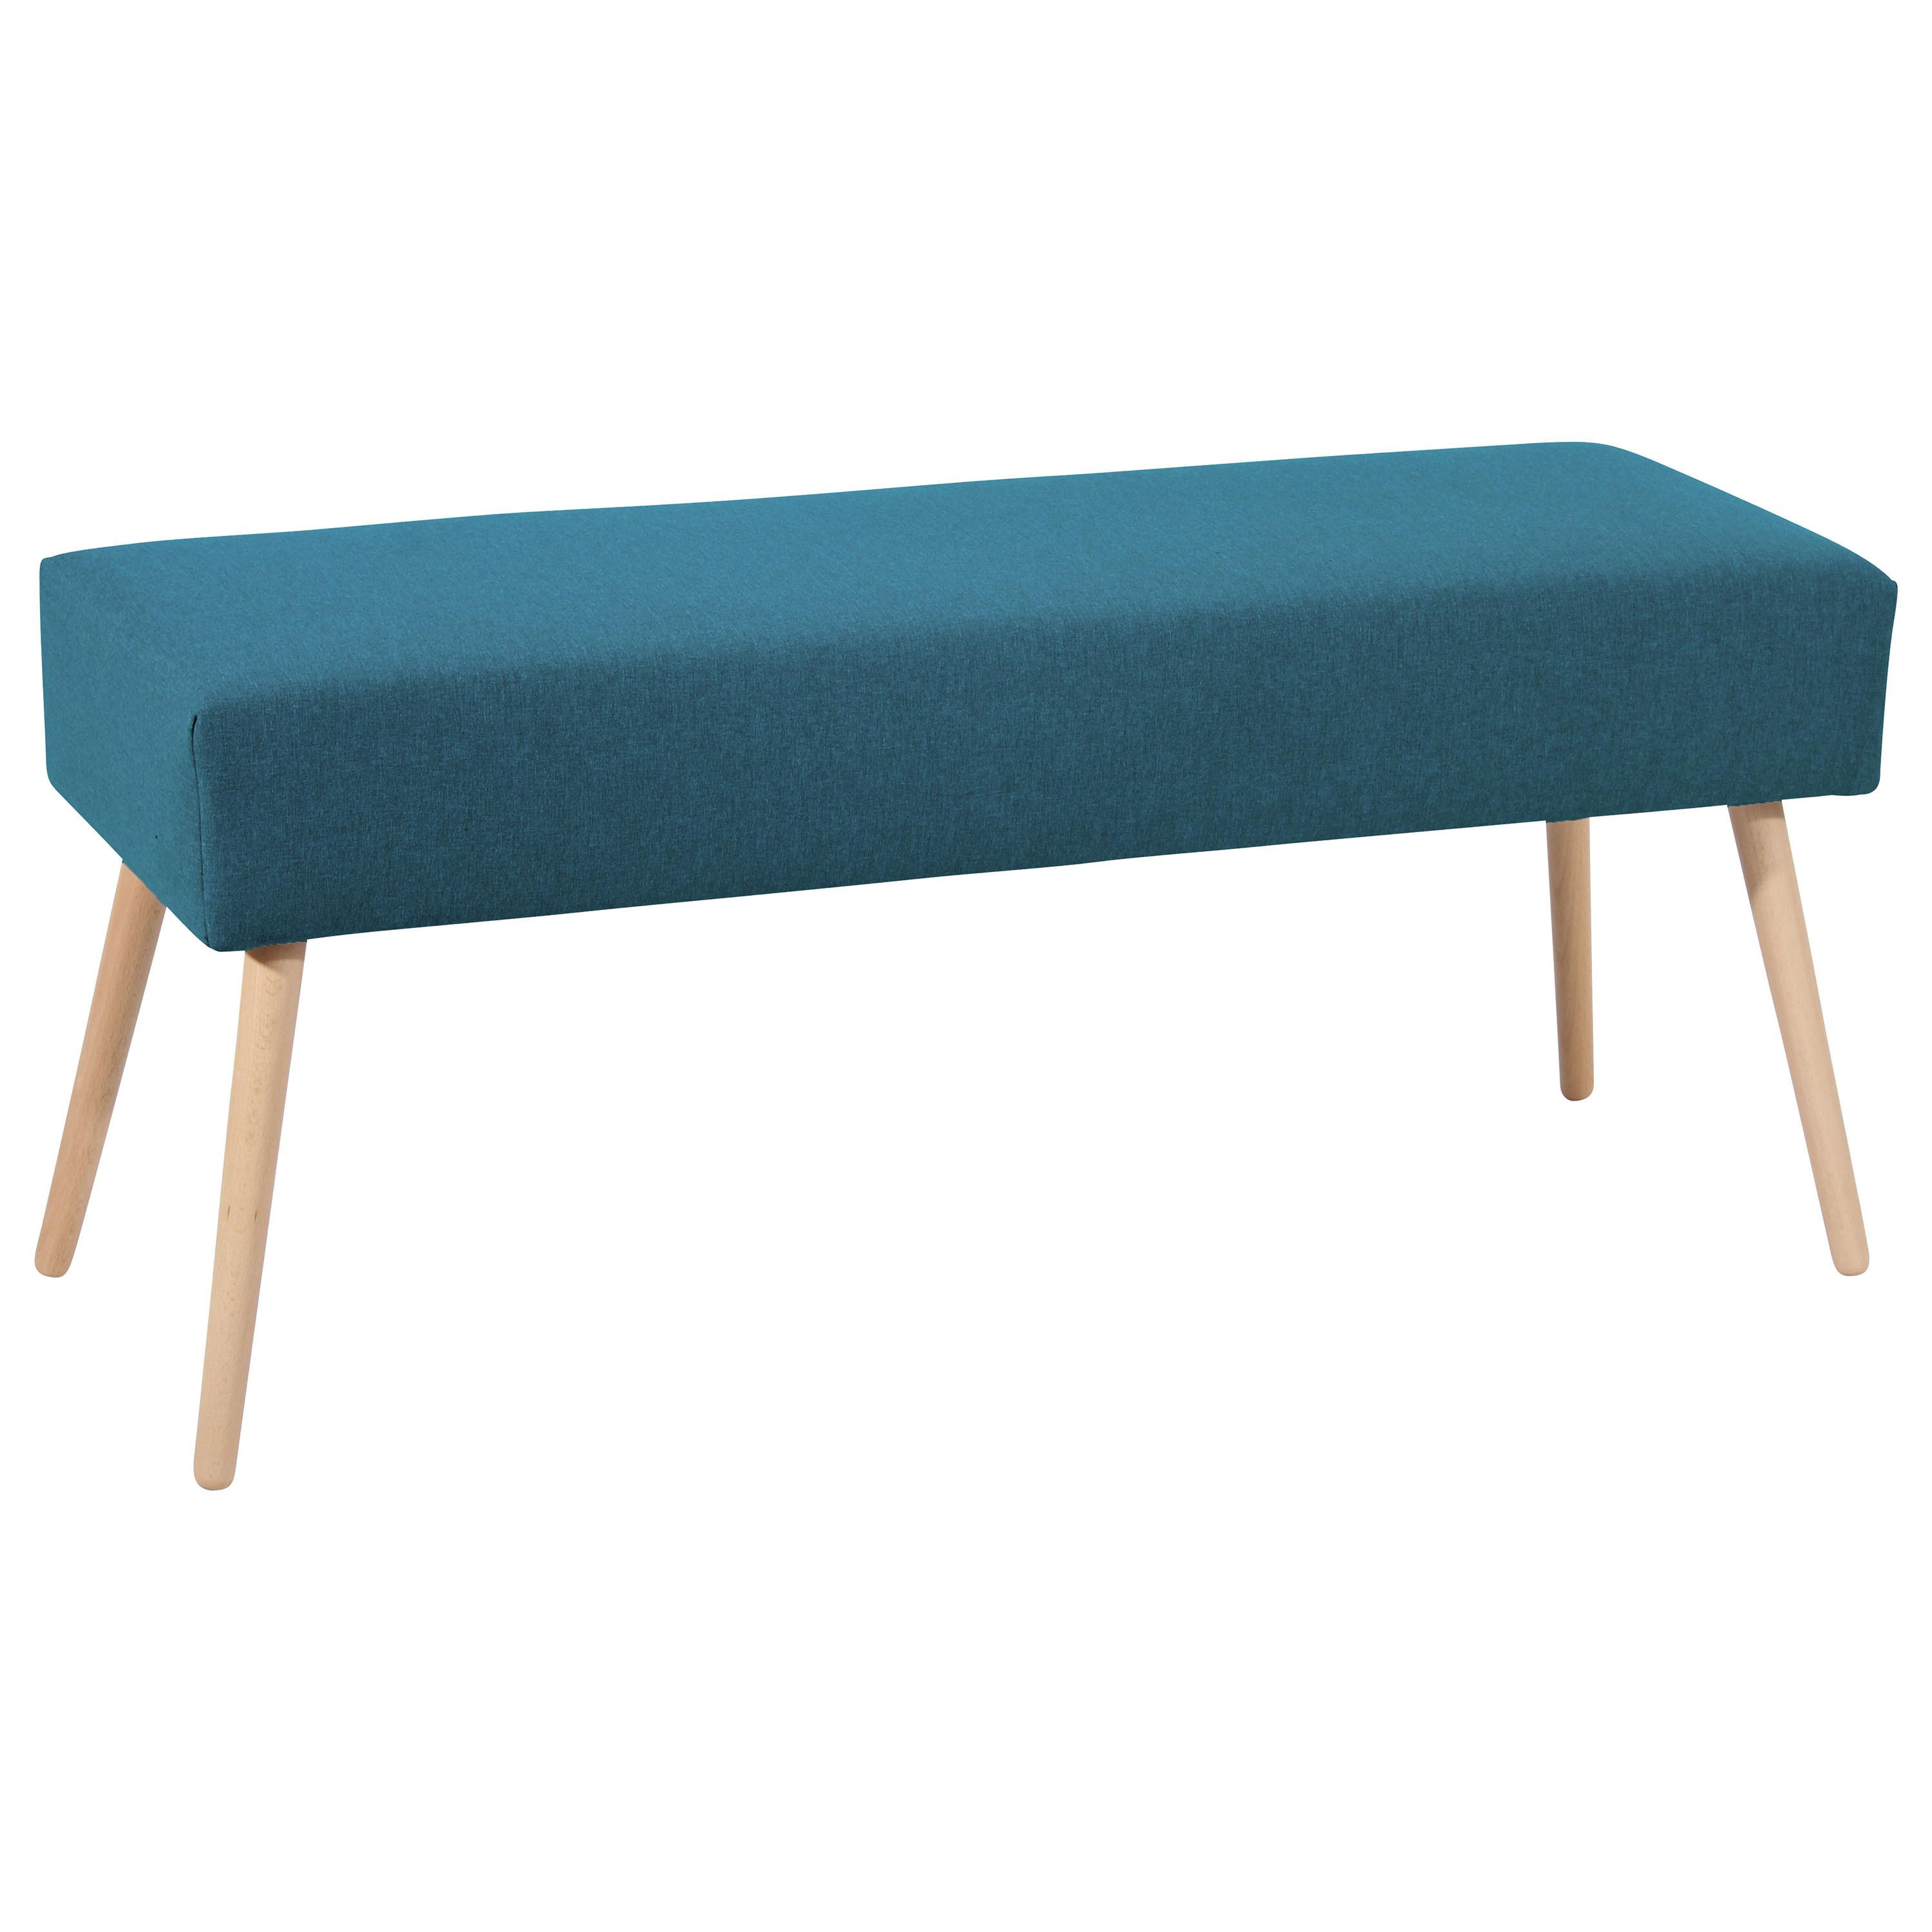 Sitzbank Gepolstert Blau Sue BxHxT: 114x48x40 cm - Blau/Buchefarben, Design, Textil (114/48/40cm) - Max Winzer